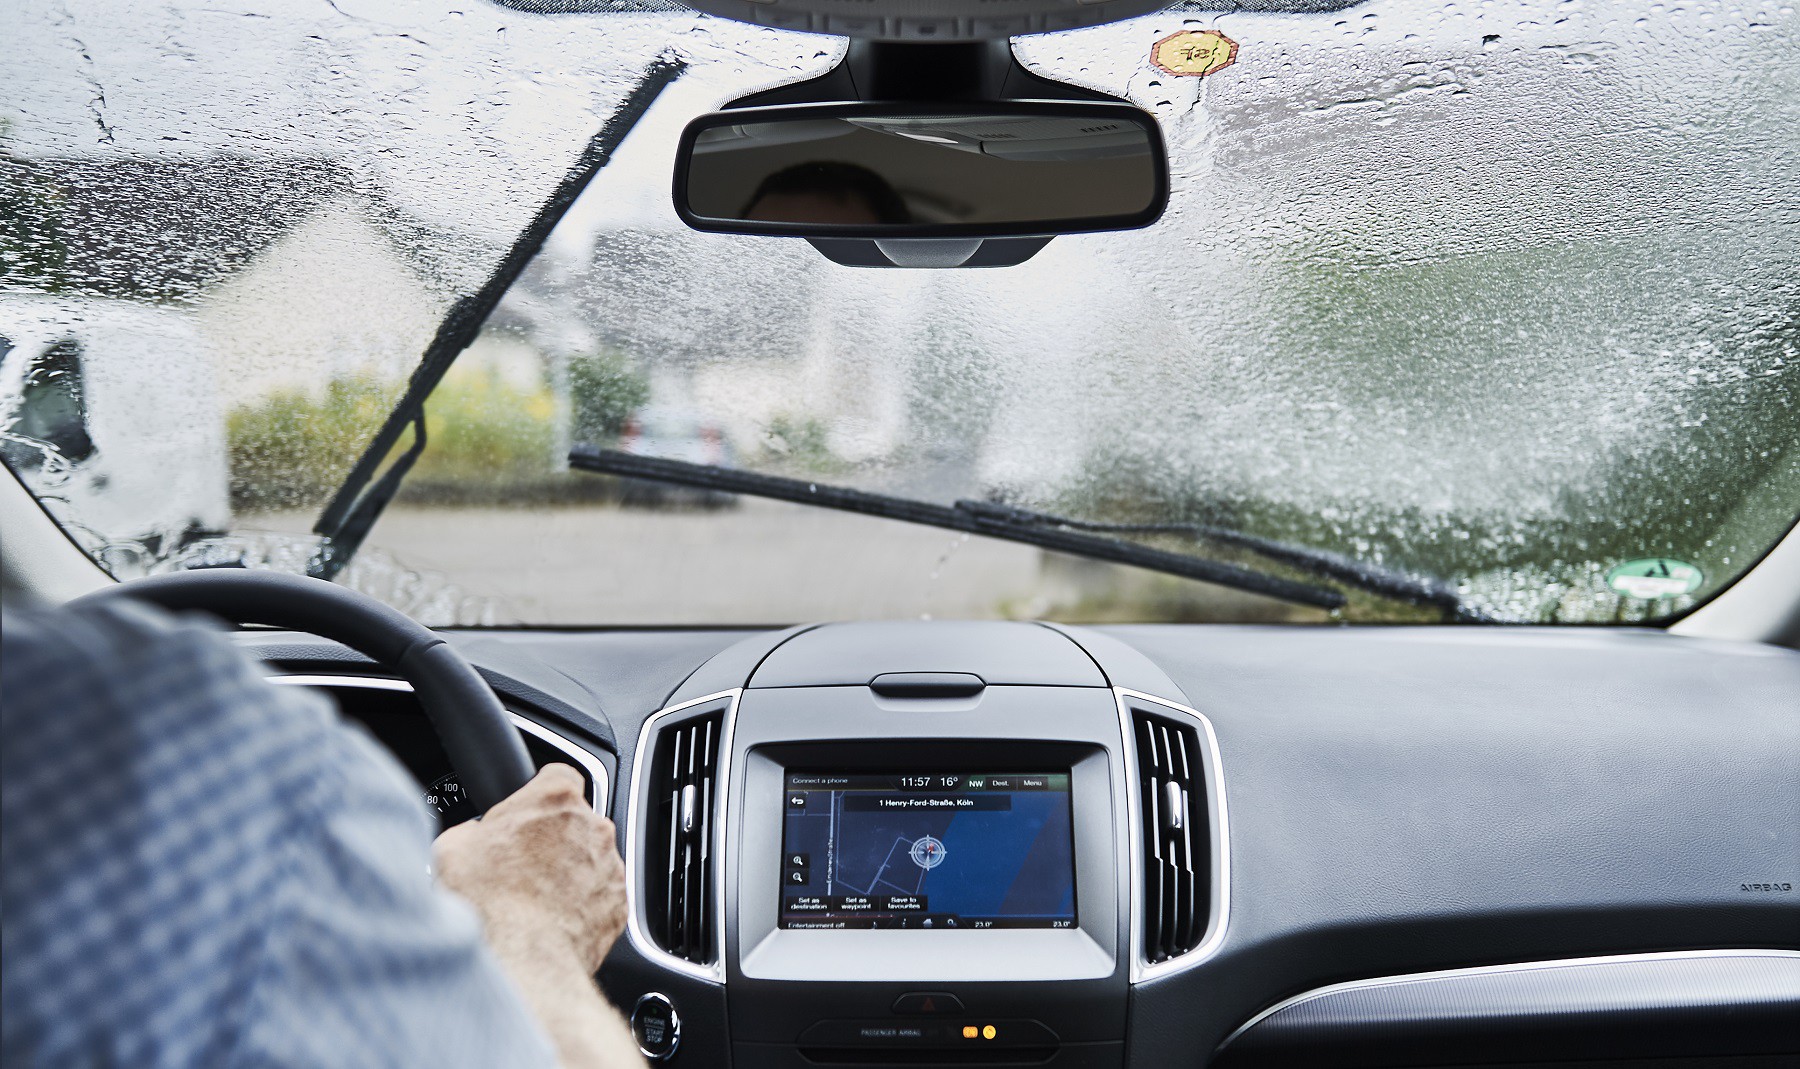 Conducir bajo la lluvia es más seguro con tecnología automática de faros y limpiaparabrisas